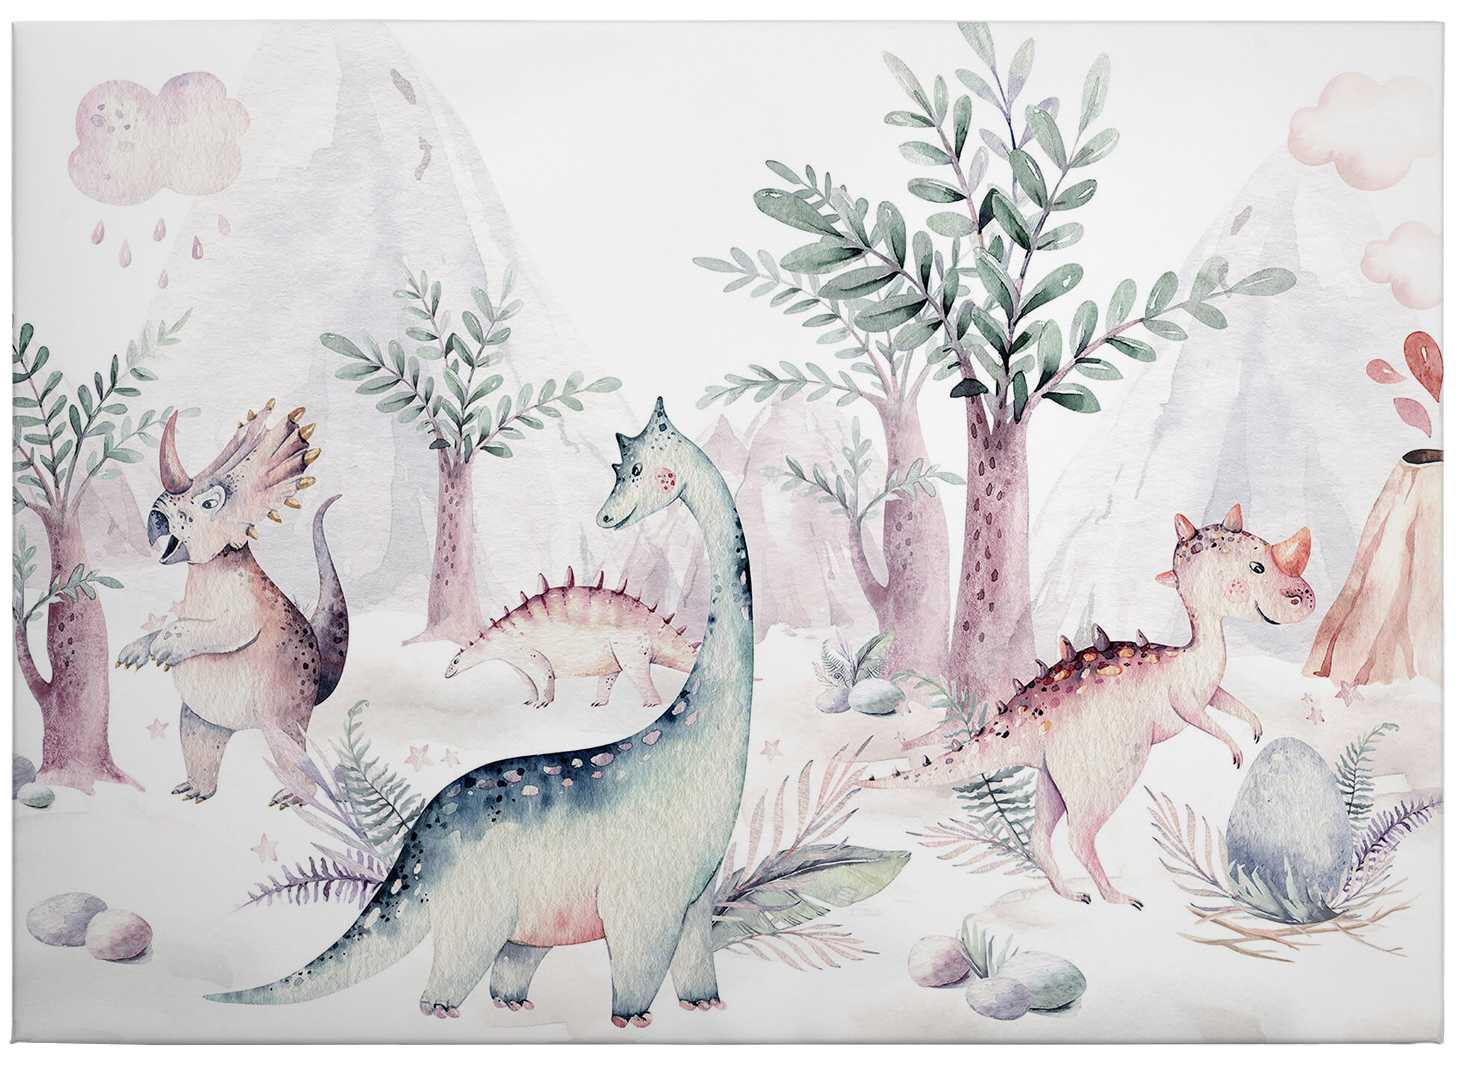             Canvas schilderij Dinosaurussen Kinderen Aquarel door Kvilis - 0,70 m x 0,50 m
        